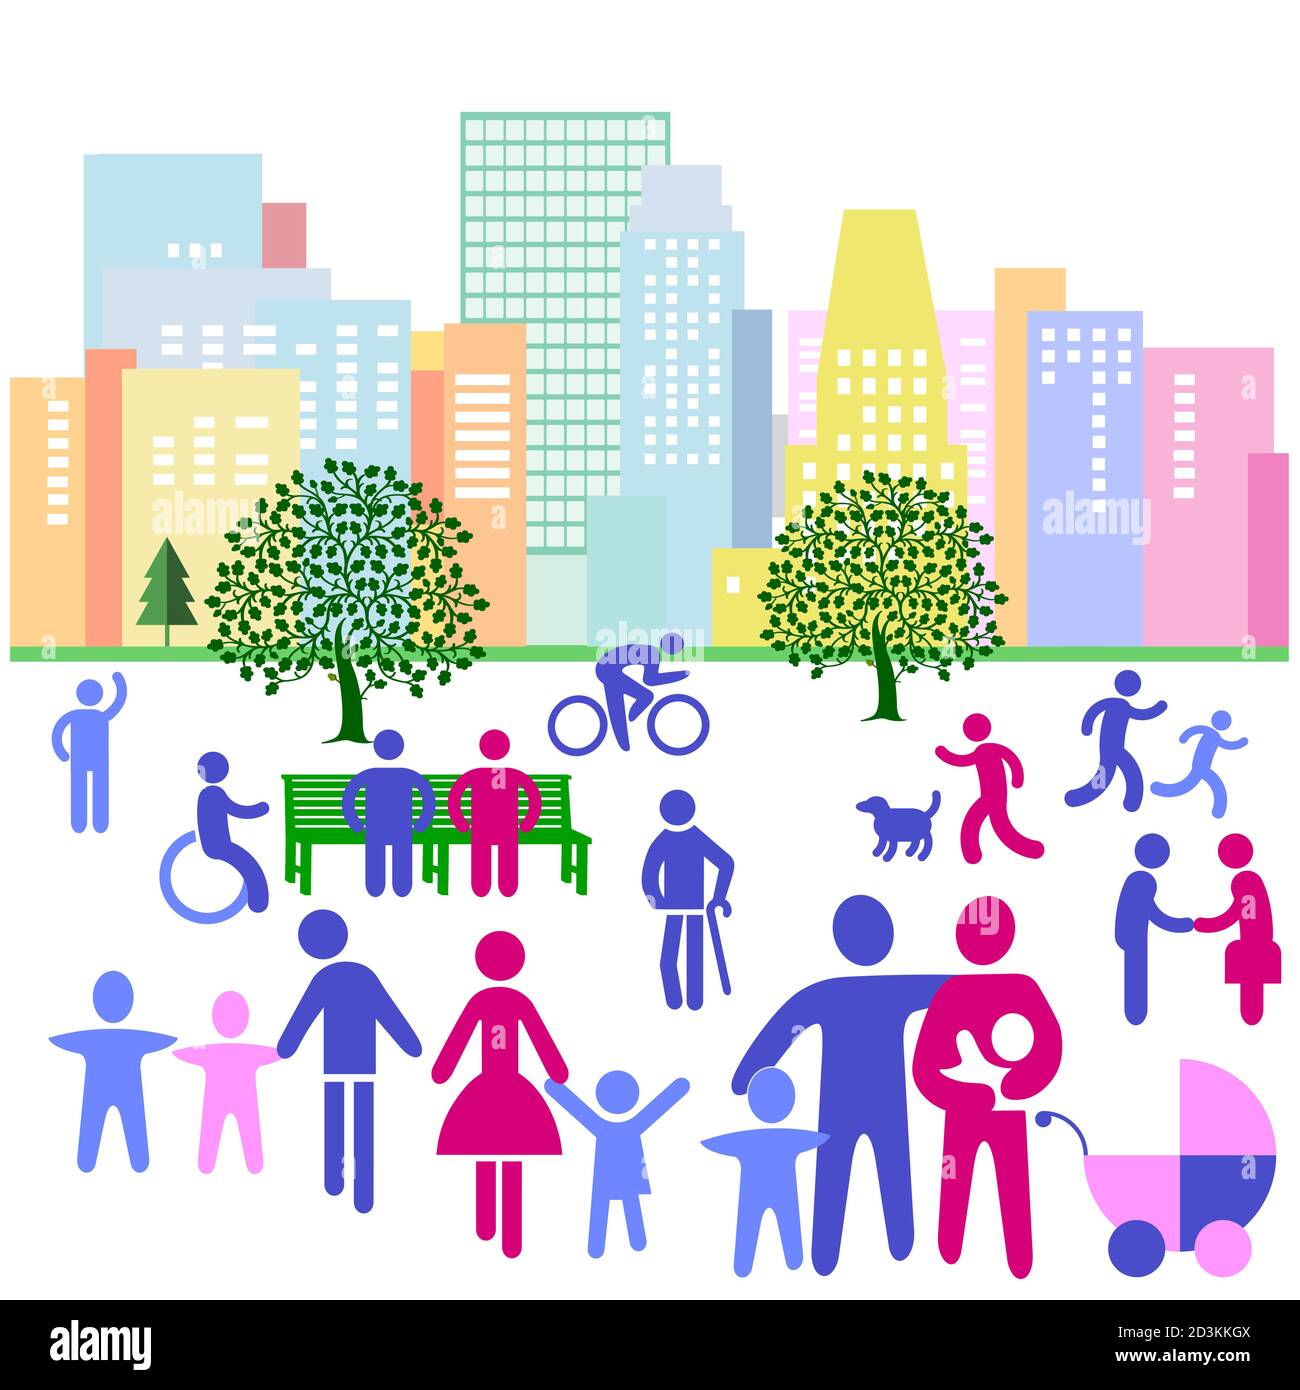 La silhouette cittadina di una città con le persone nel tempo libero, illustrazione del pittogramma Illustrazione Vettoriale